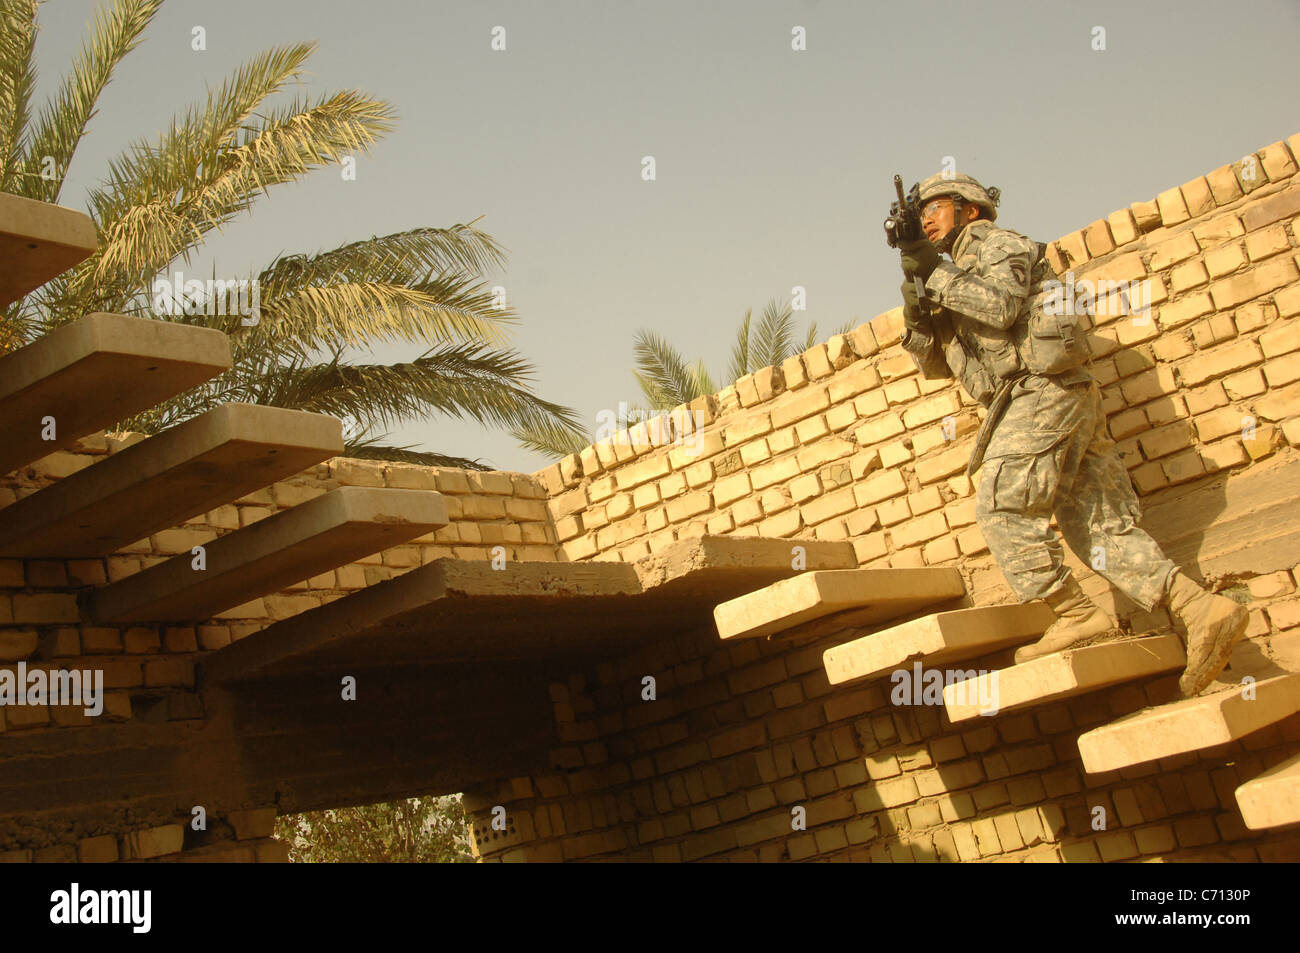 El Sargento del Ejército de Estados Unidos. Duong Tran se mueve a un tejado para proporcionar seguridad a otros soldados que busque el techo de una casa sospechosa de depósitos ocultos de armas durante una búsqueda y cordón patrulla en la ciudad de Al Mahmudiyah, Al Mahmudiyah, distrito de la provincia de Bagdad, Irak, el 4 de septiembre de 2008. Tran es asignado al 3º Batallón, 320º Regimiento de Artillería de campo, la Tercera Brigada del equipo de combate, la 101ª División Aerotransportada (de asalto aéreo). DoD foto por Spc. Richard Del Vecchio, el Ejército de los Estados Unidos. (Liberado) Foto de stock